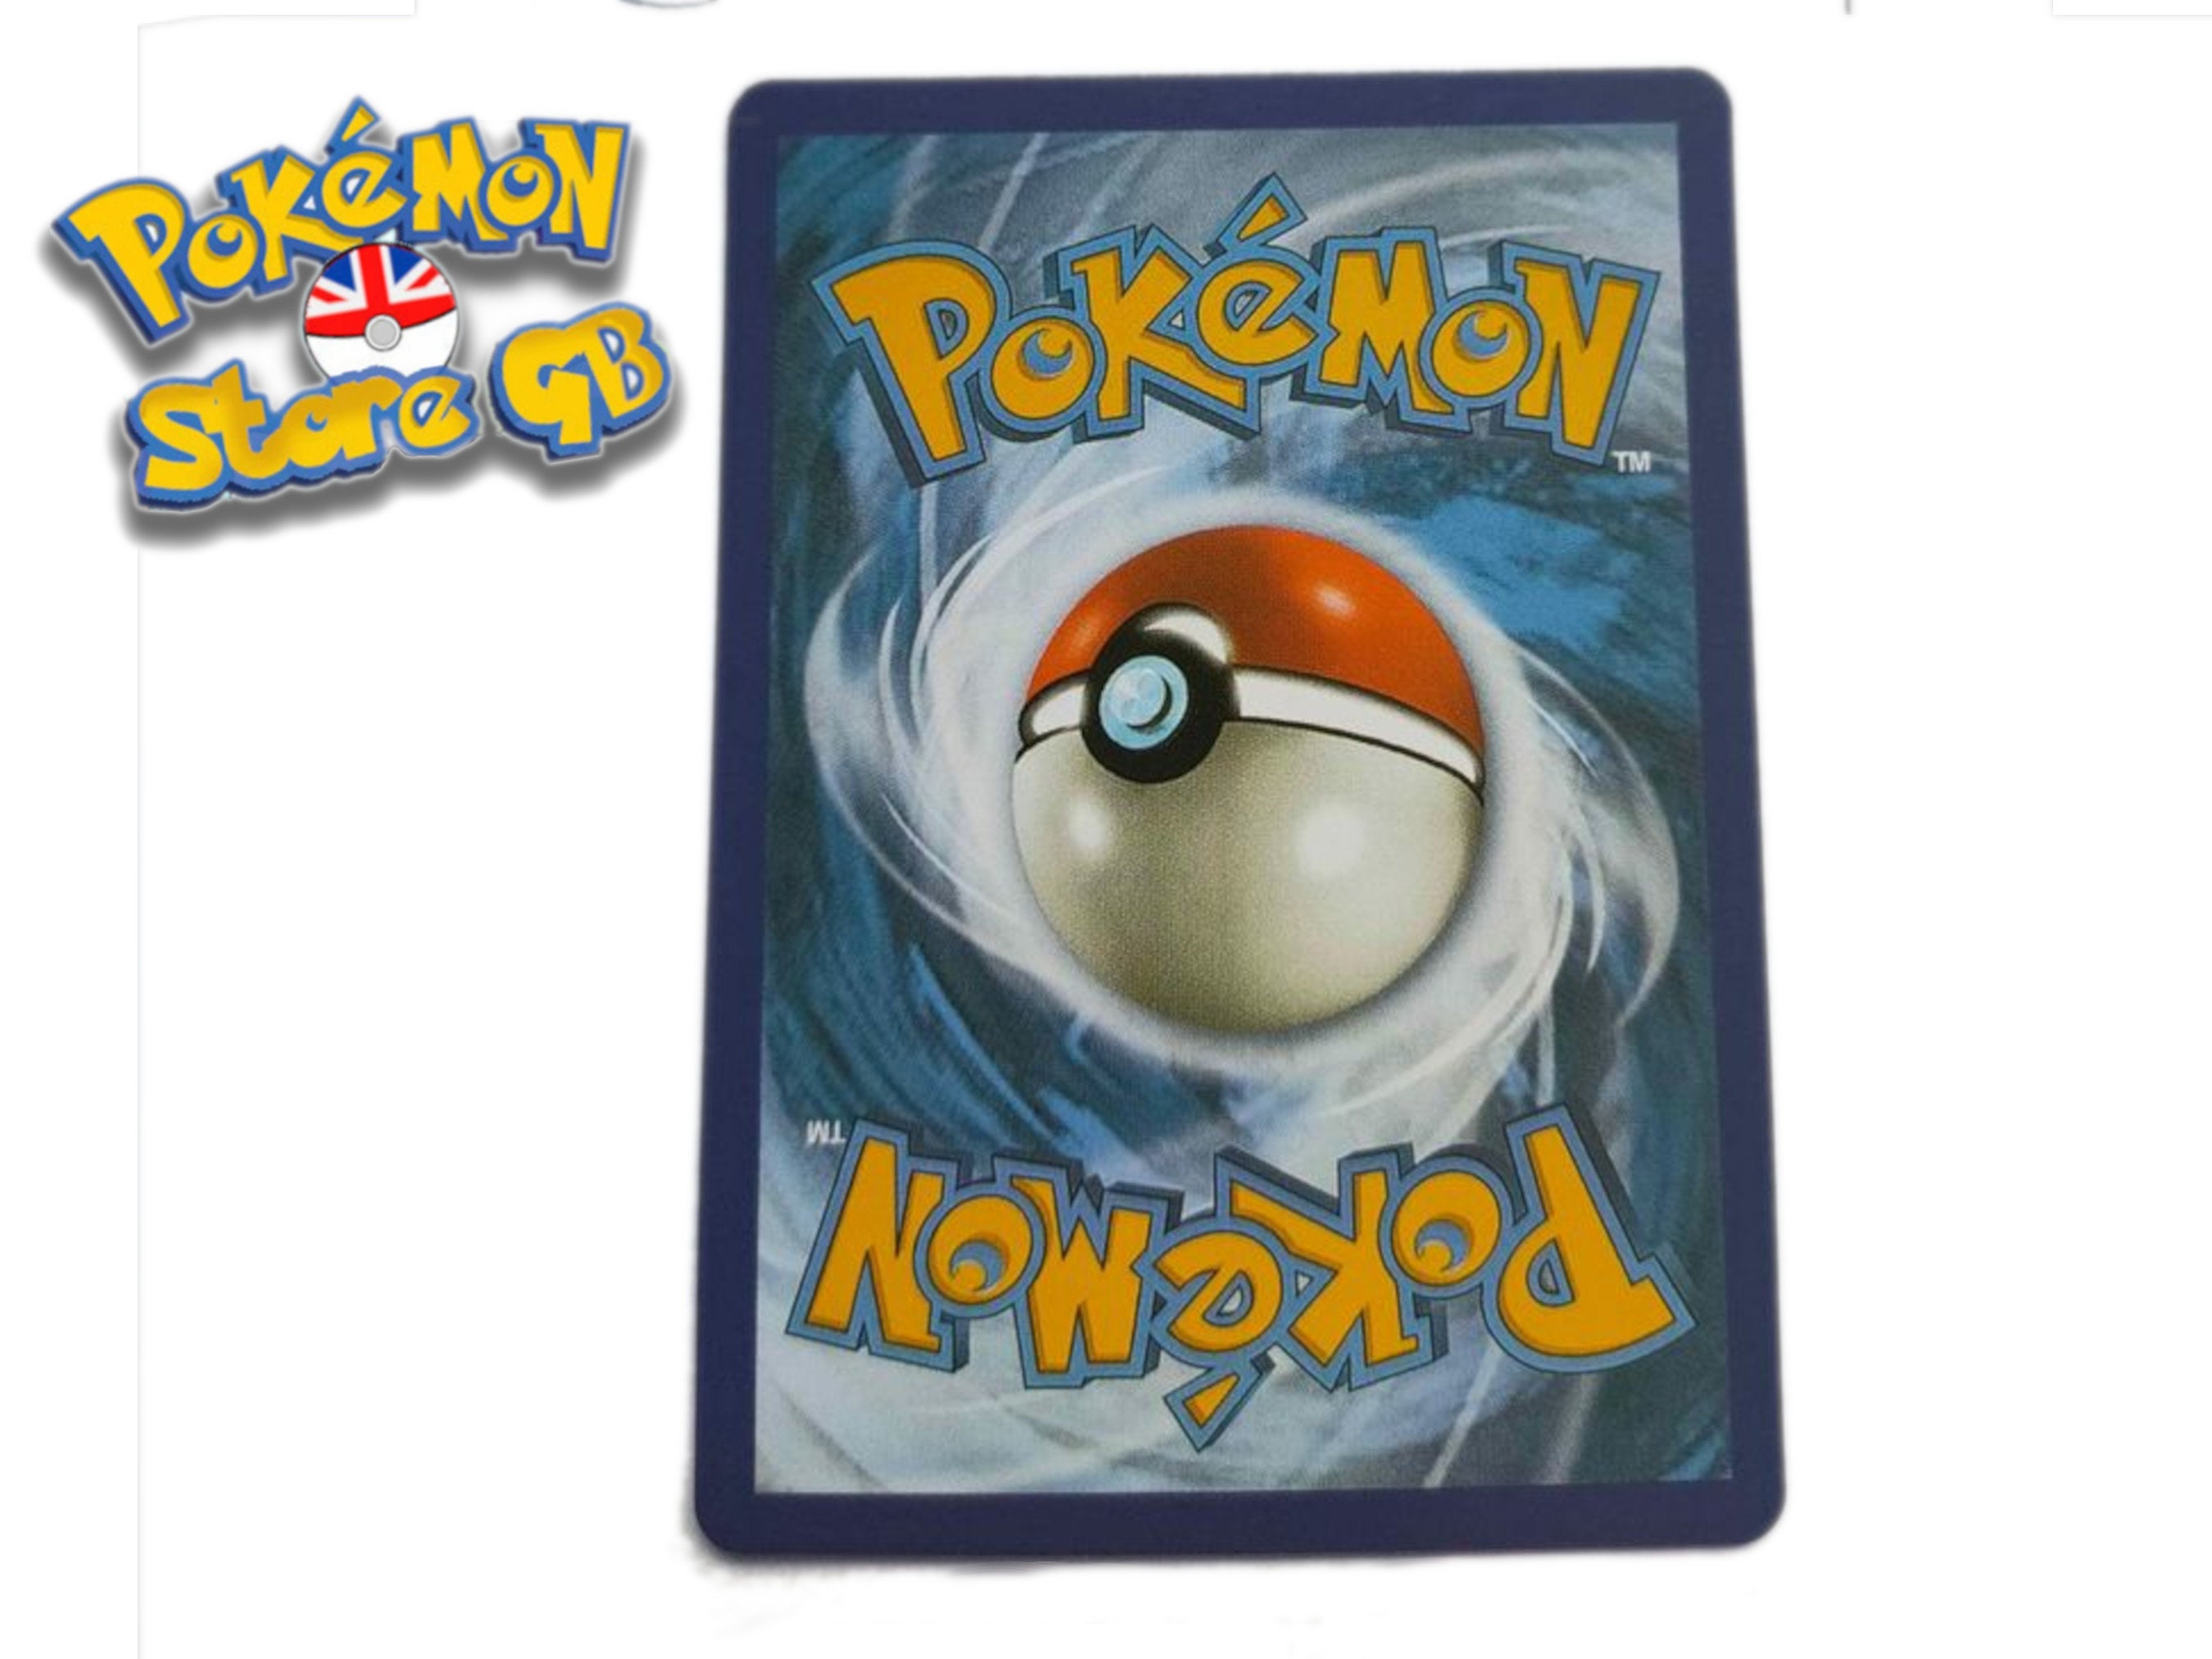 Pokémon Carta Espeon Gx Shiny Hidden Fates - Psa 9 Mint - Escorrega o Preço